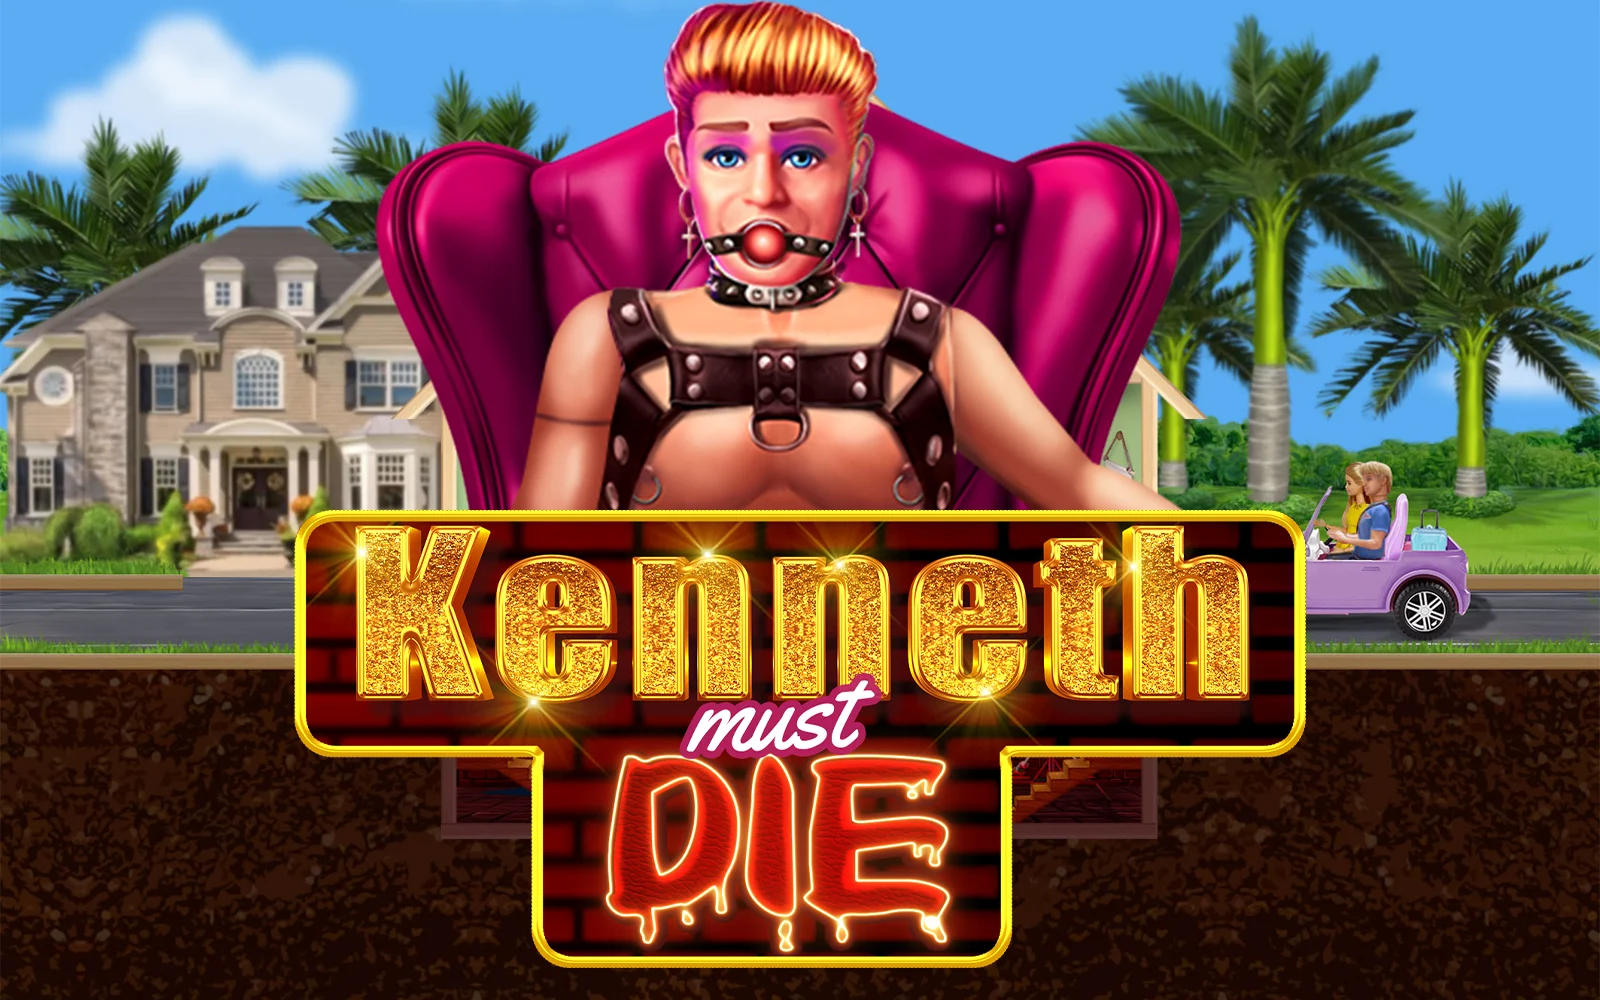 Jogue Kenneth Must Die no casino online Starcasino.be 